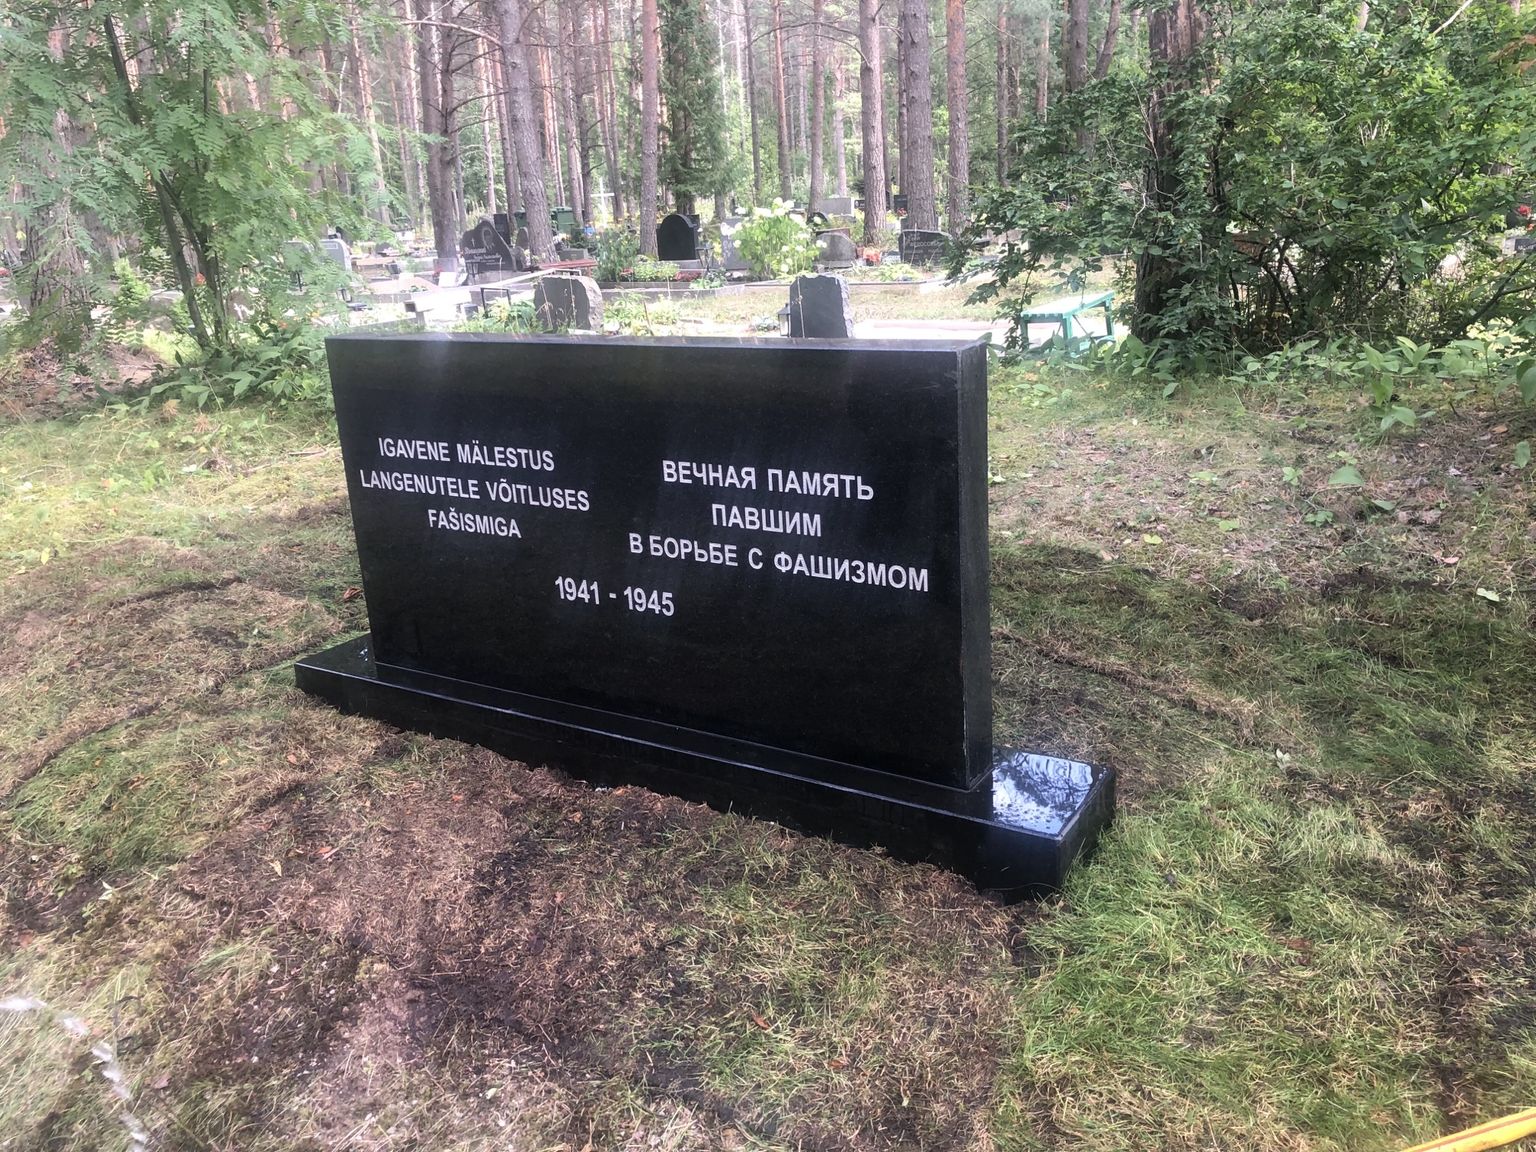 Мемориальный камень на Вильяндиском шоссе в Таллинне.